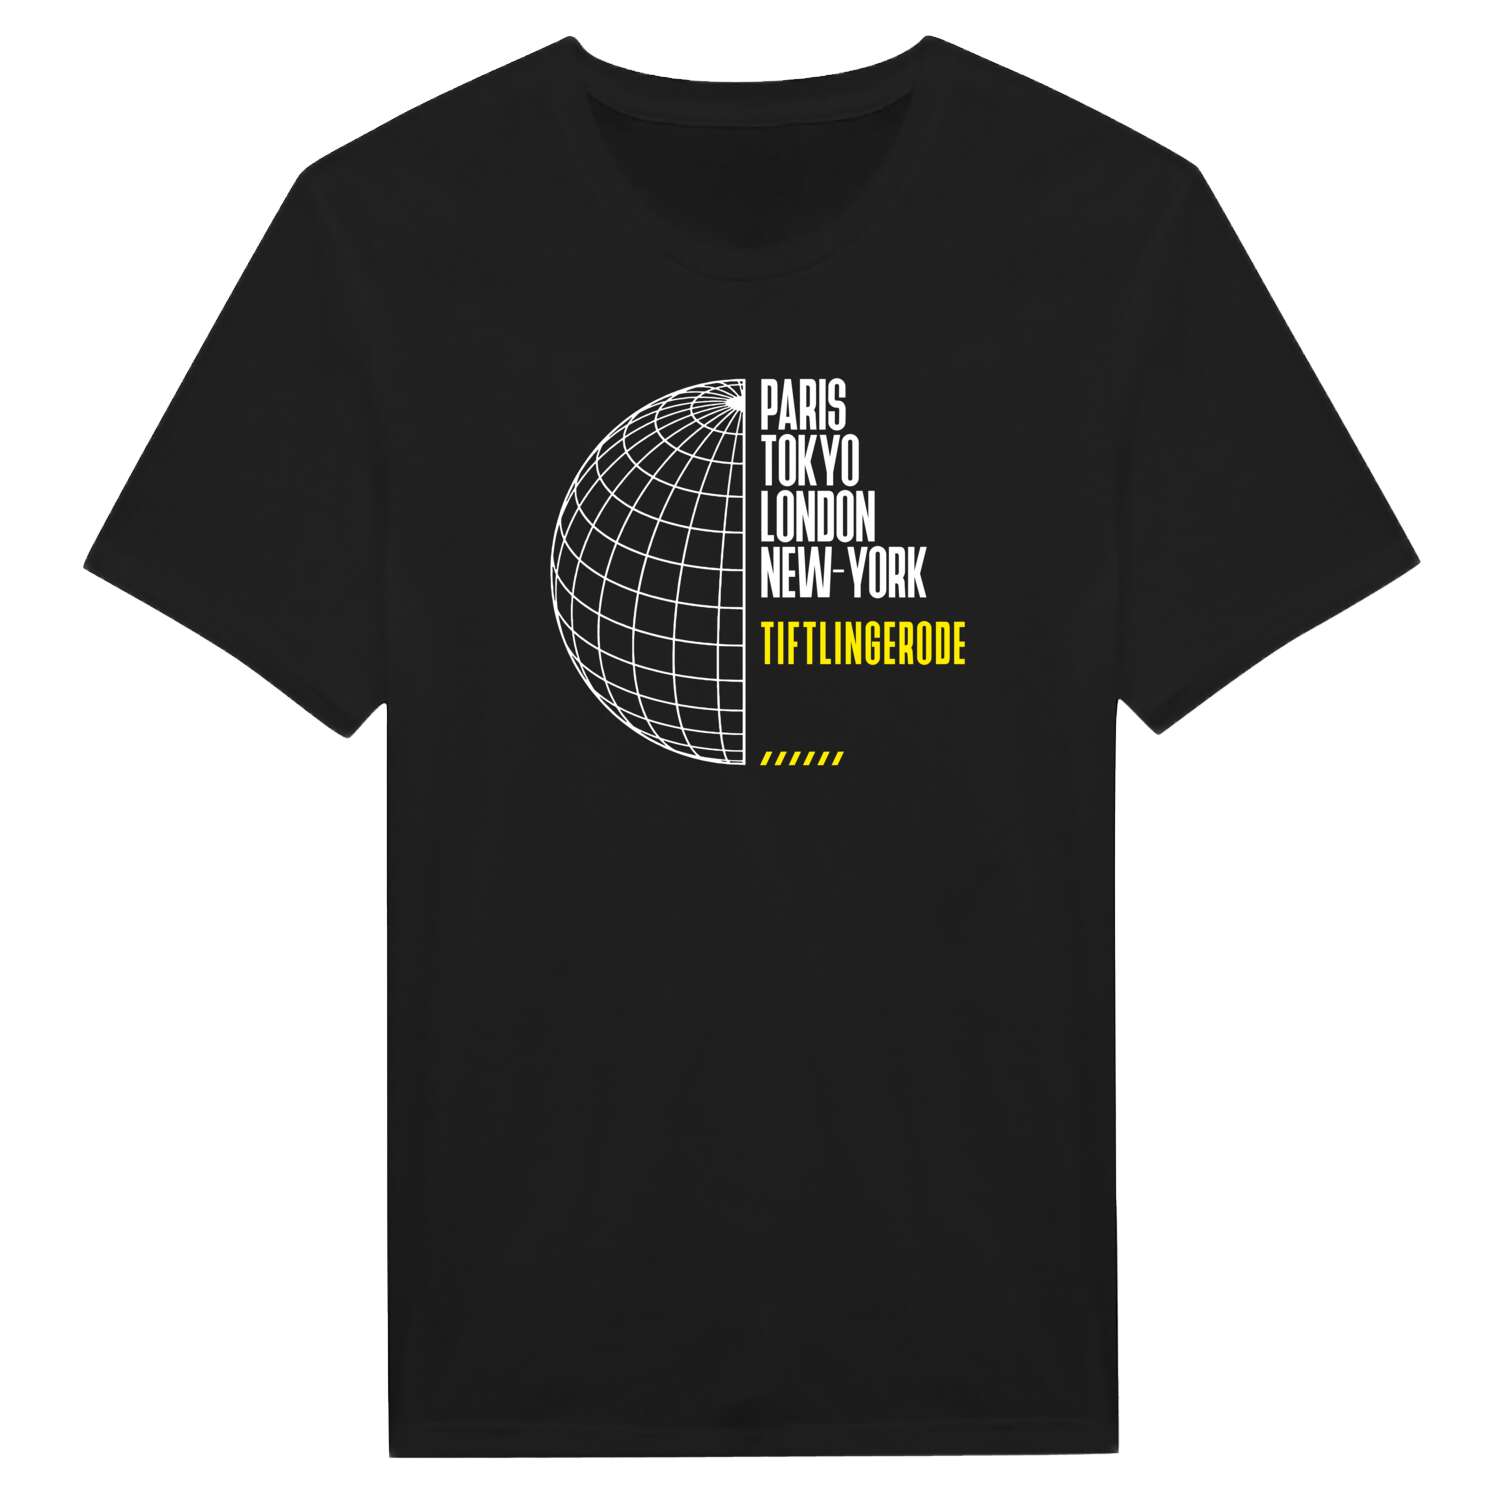 Tiftlingerode T-Shirt »Paris Tokyo London«